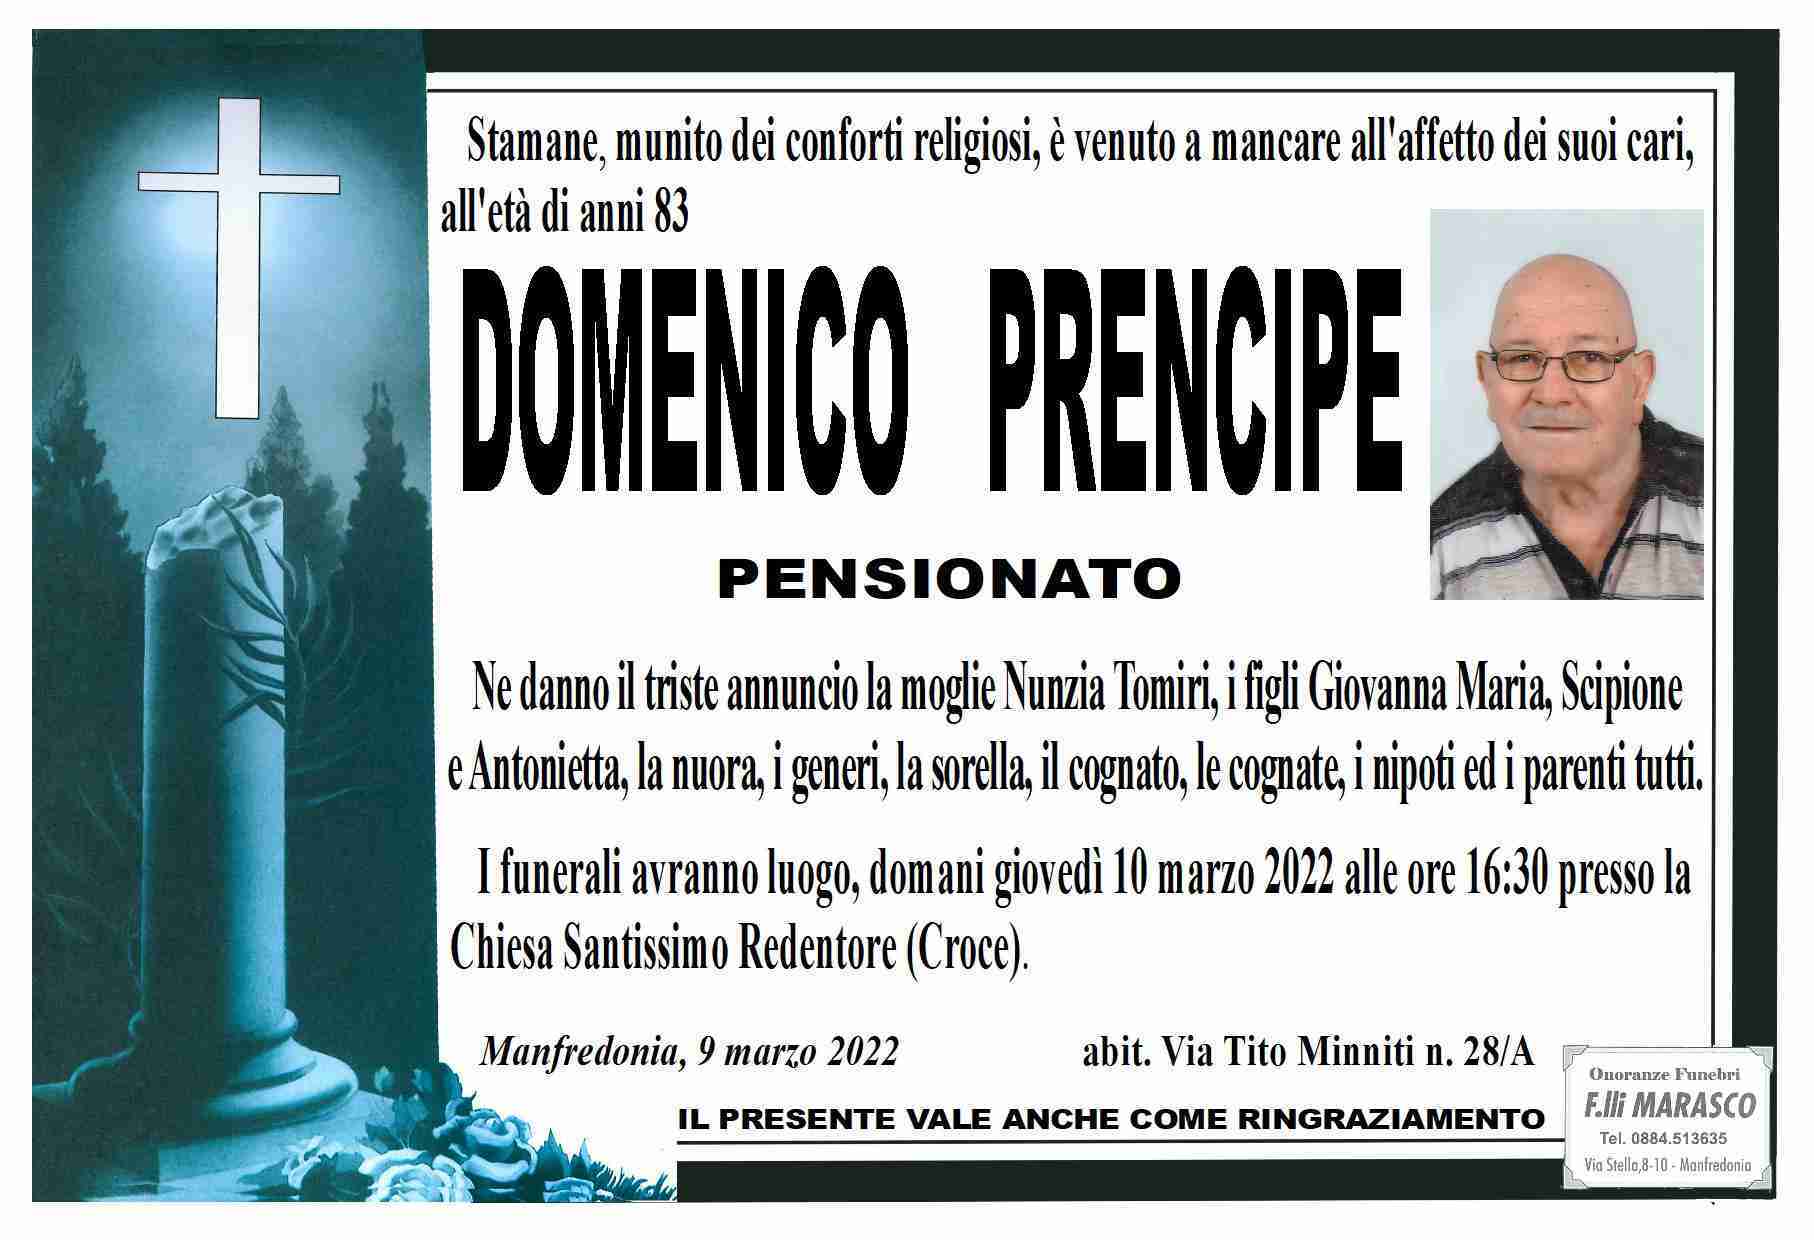 Domenico Prencipe